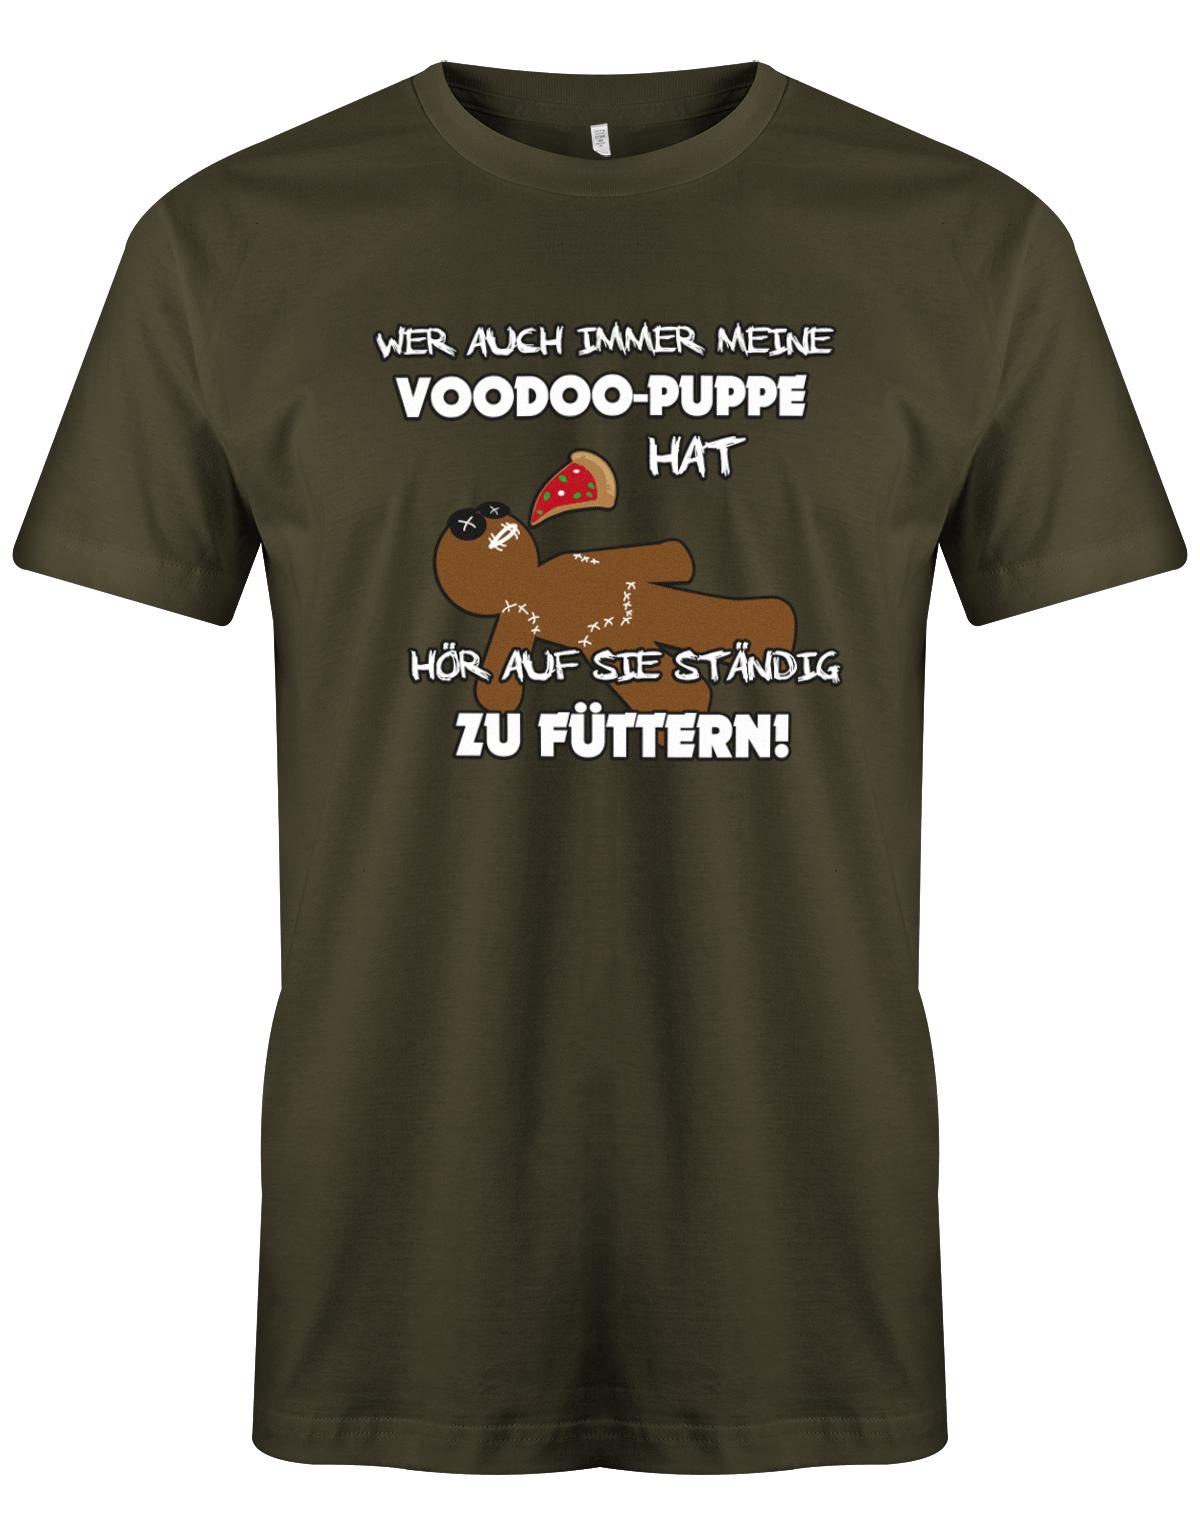 Wer auch immer meine Voodoo Puppe hat - nicht füttern - Sprüche Shirt  Herren Shirt Army